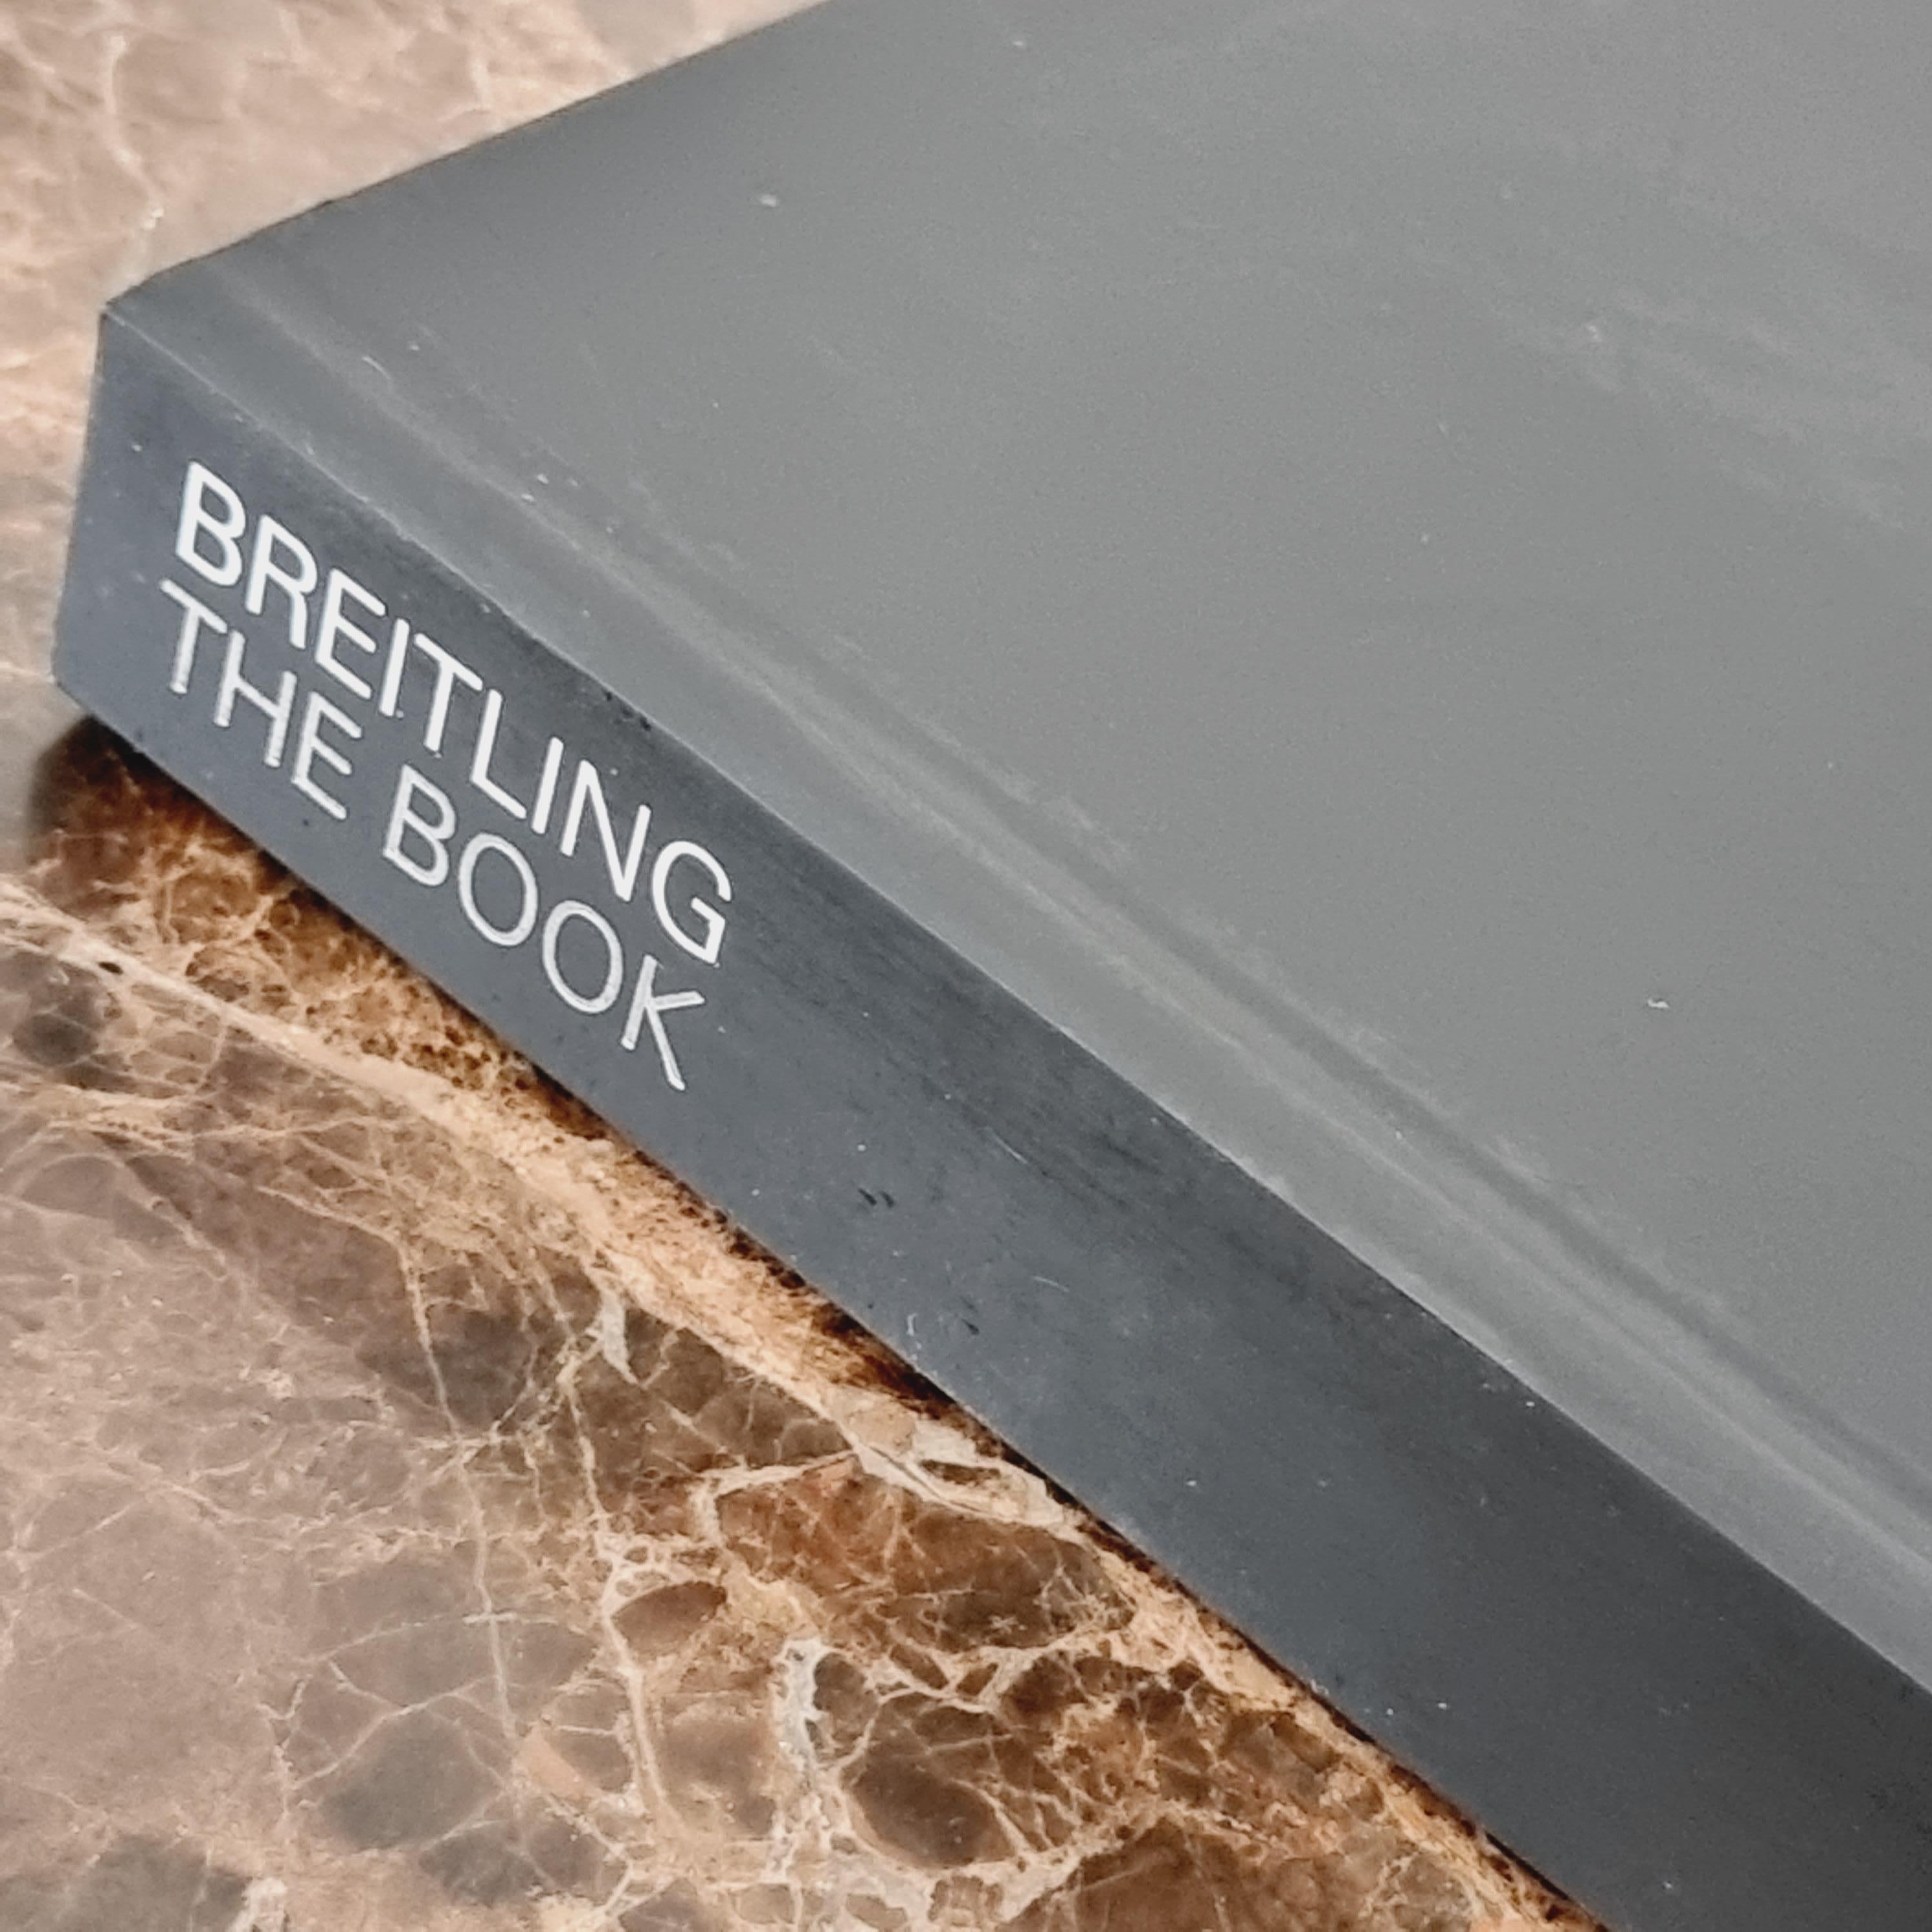 Breitling - Das Buch, Hardcover, englische Ausgabe, 2009. 336 Seiten mit ca. 450 Abbildungen. Von Genoud, Herve. Gedruckt in der Schweiz. 

Als Spezialist für Chronographen und technische Uhren hat Breitling auch die schönsten Stunden bei der